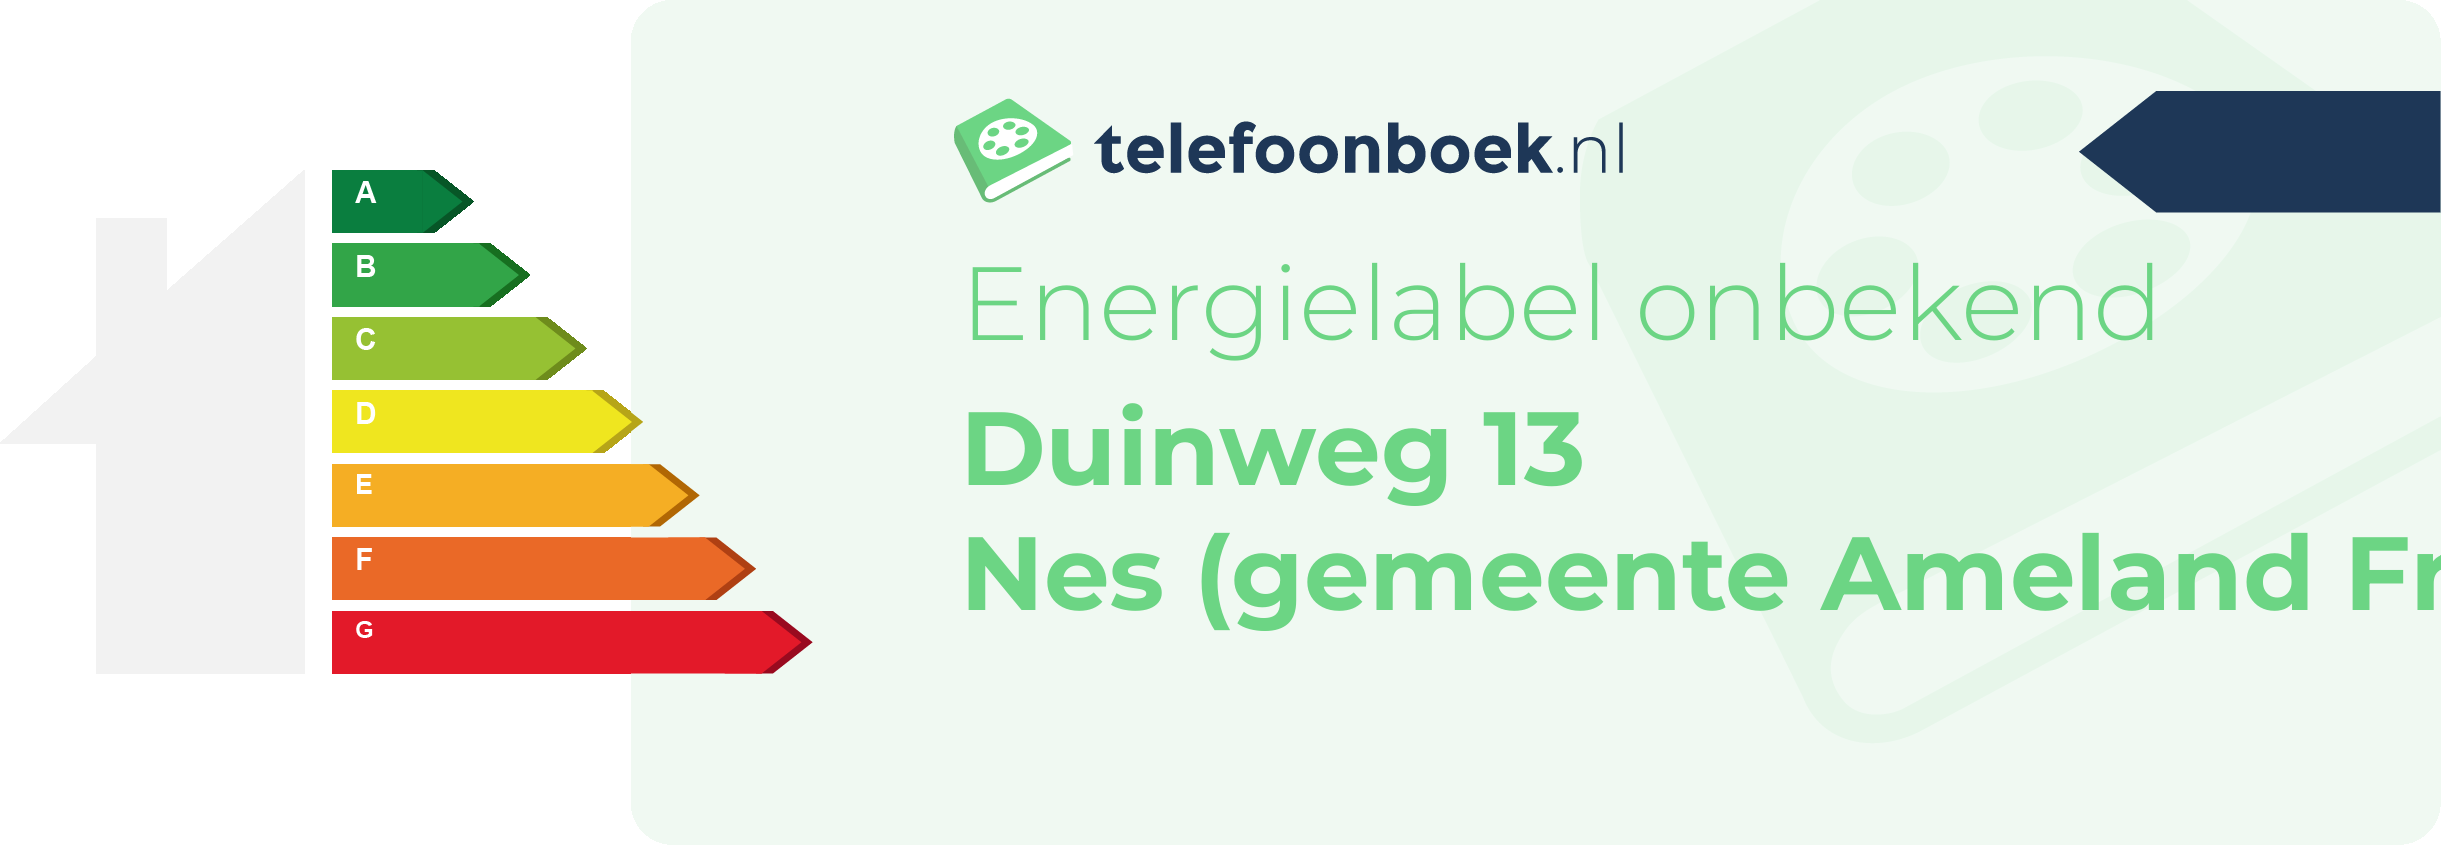 Energielabel Duinweg 13 Nes (gemeente Ameland Friesland)